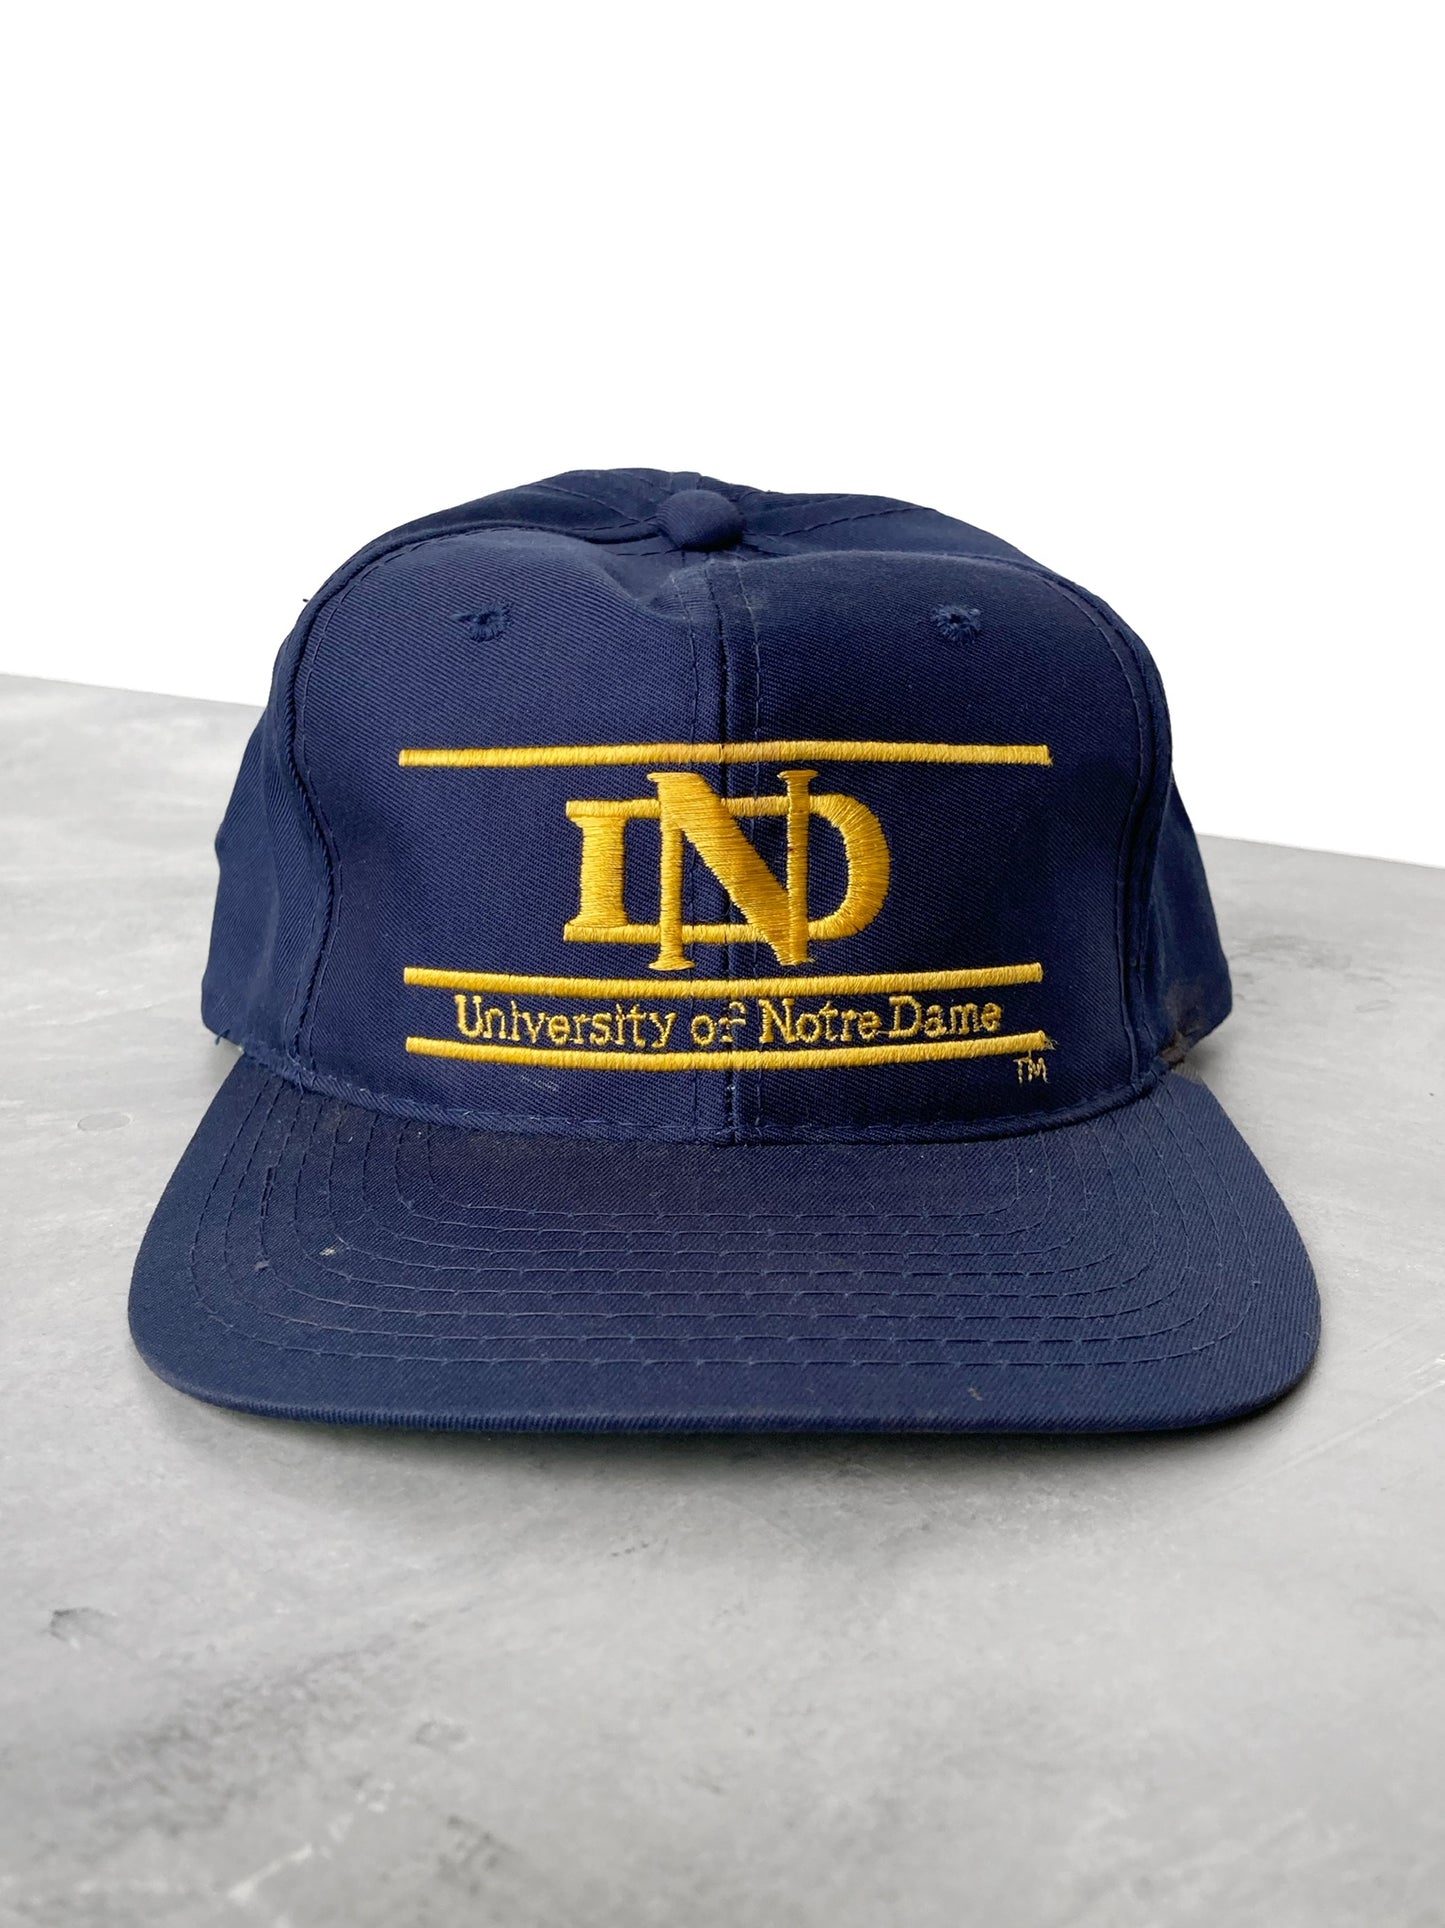 Notre Dame Snapback Hat 90's